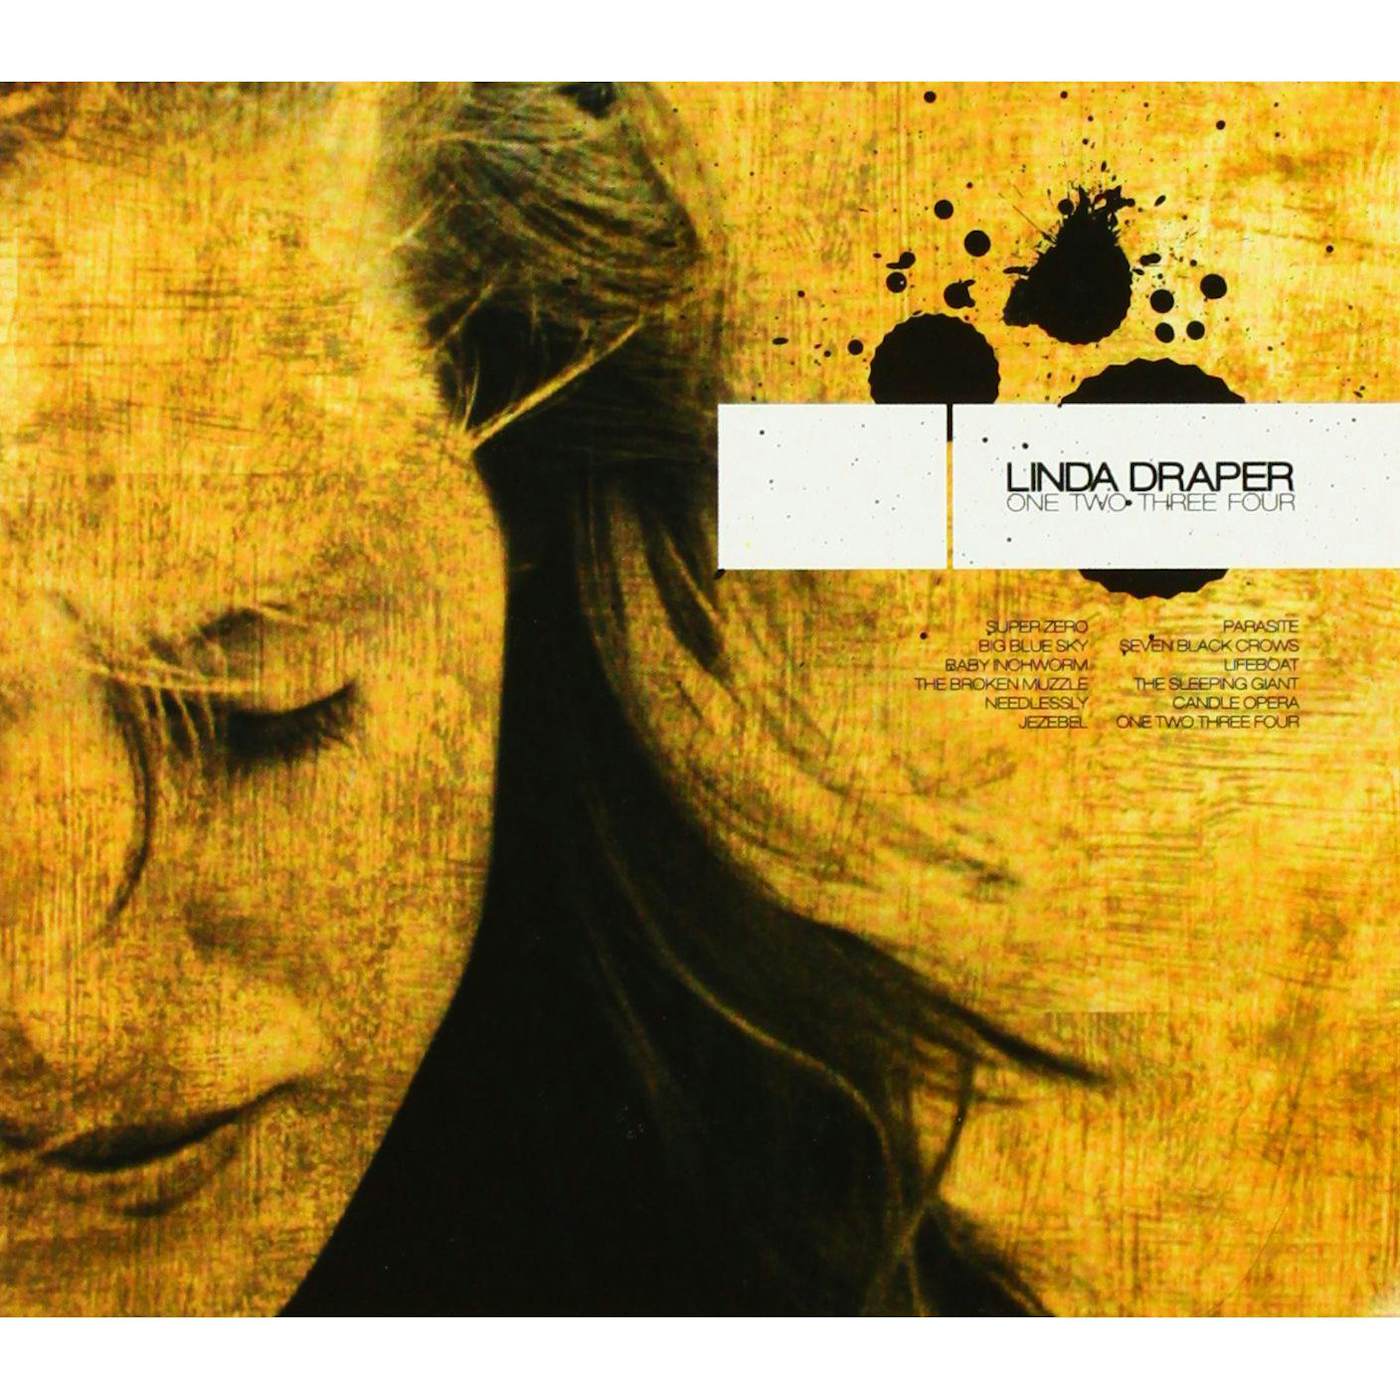 LINDA DRAPER ONE TWO THREE FOUR CD